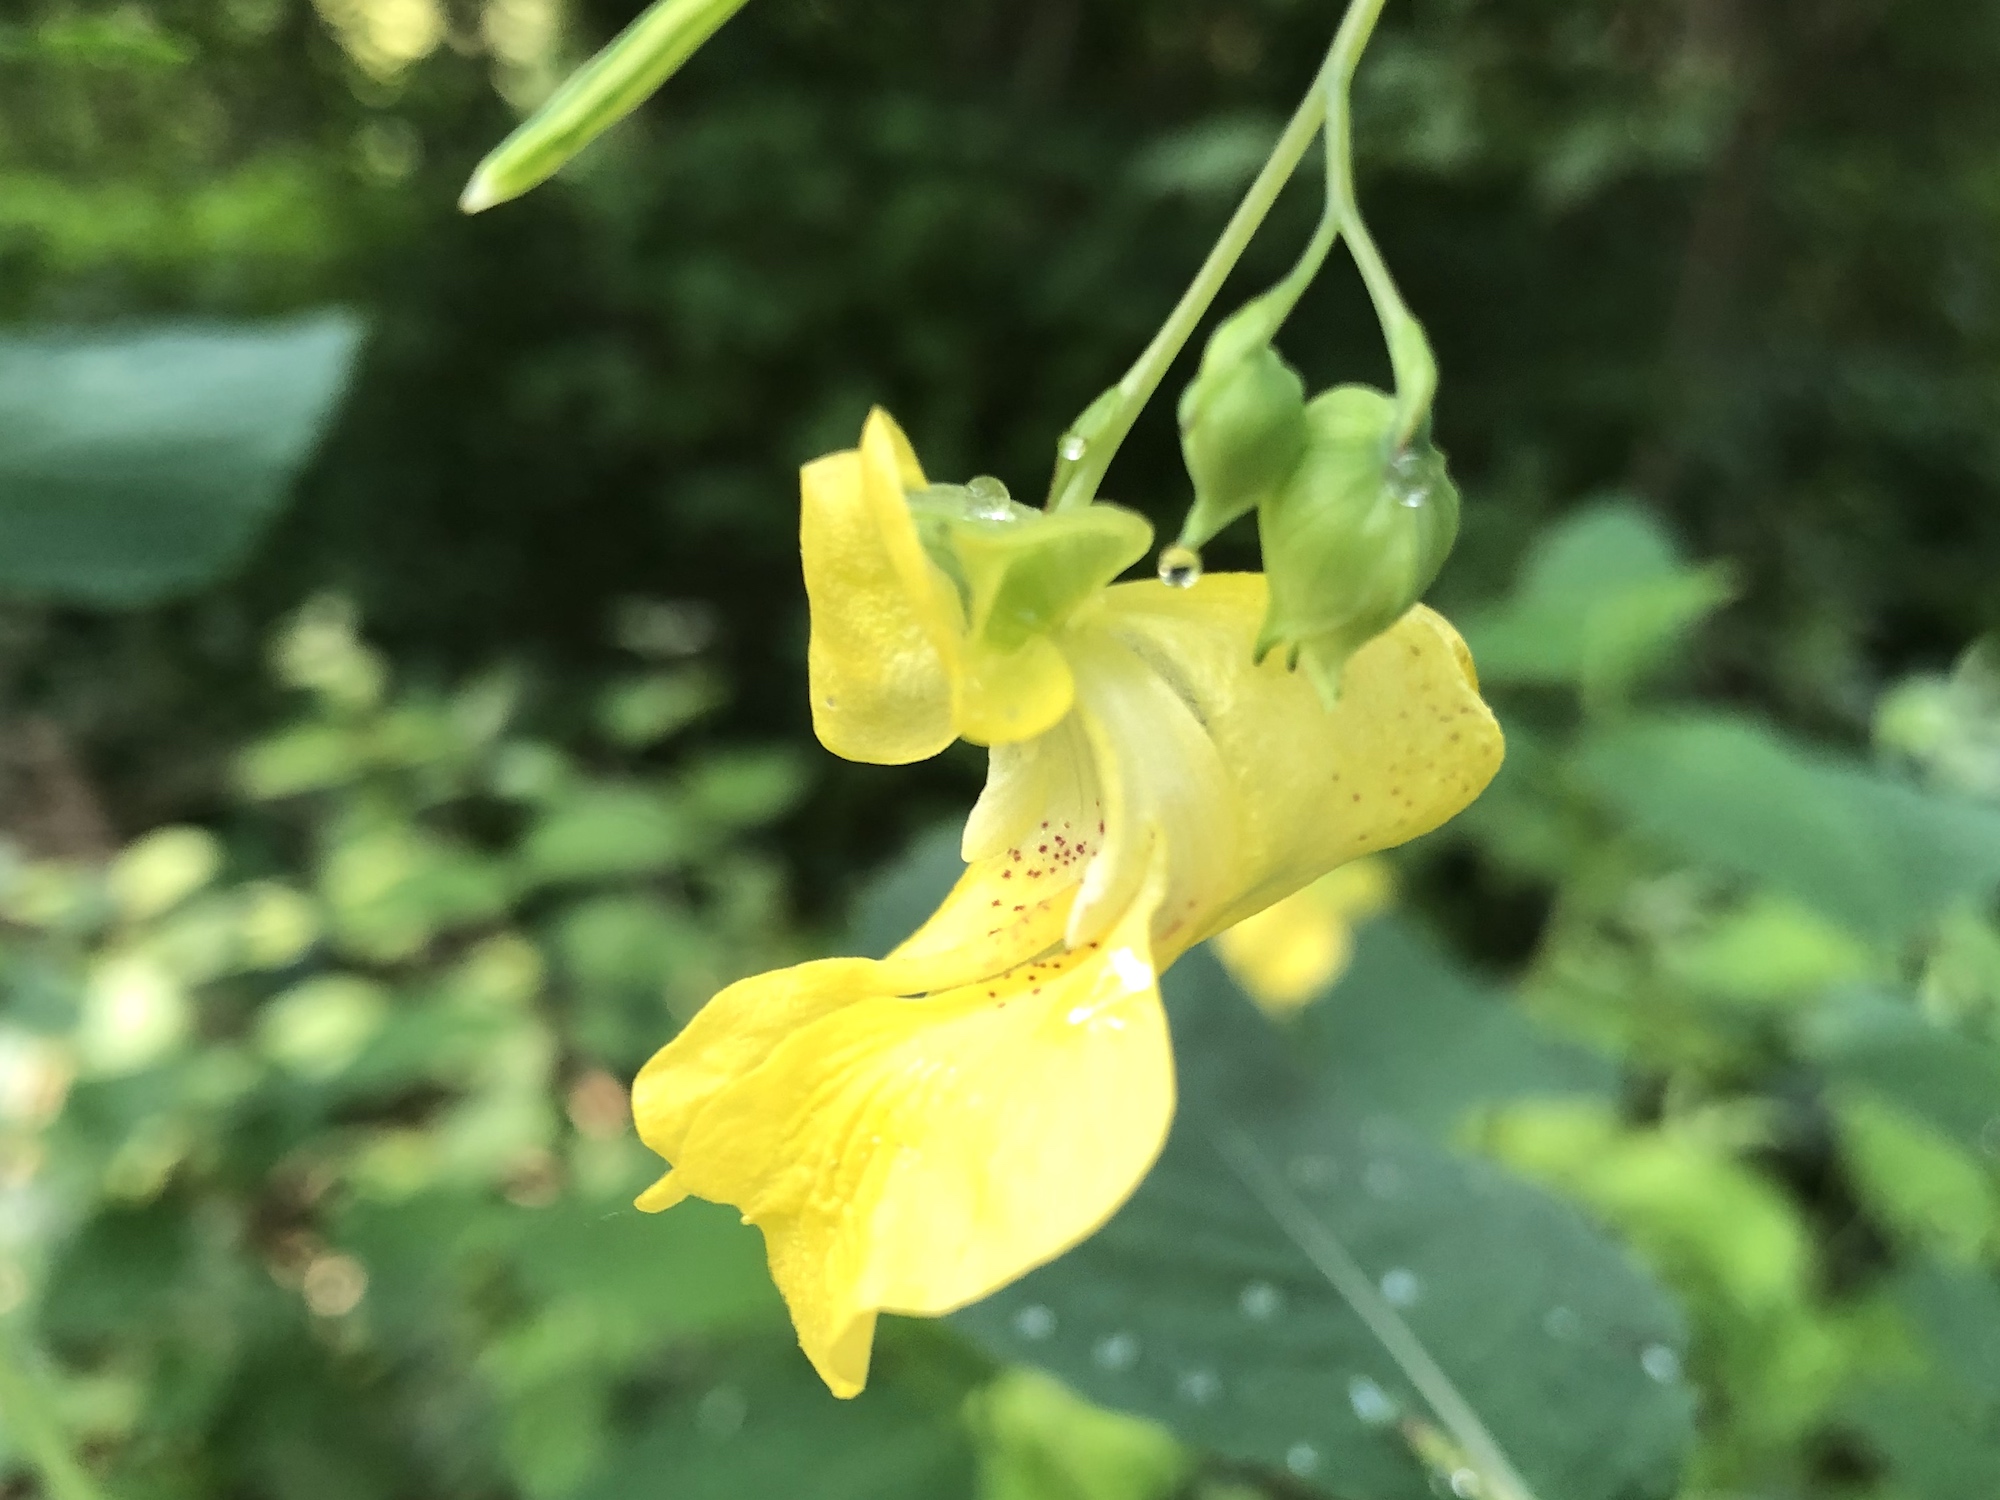 Yellow Jewelweed in the Oak Savanna on July 8, 2019.